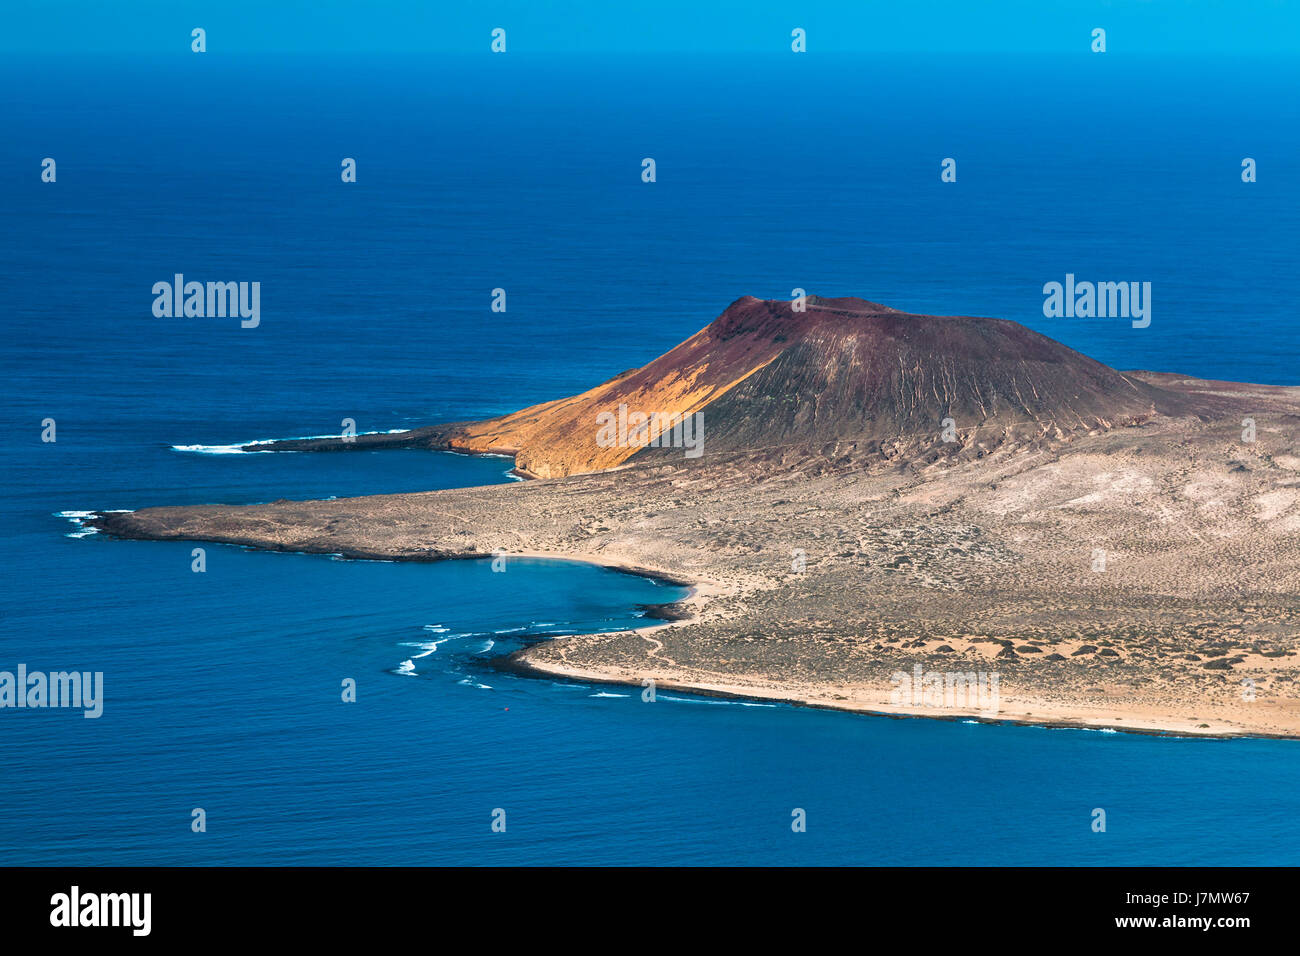 Vista desde el Mirador del Rio en Lanzarote, España a la Isla de La Graciosa con el volcán Montana Amarilla, las playas playa francesa y Playa de l Foto de stock